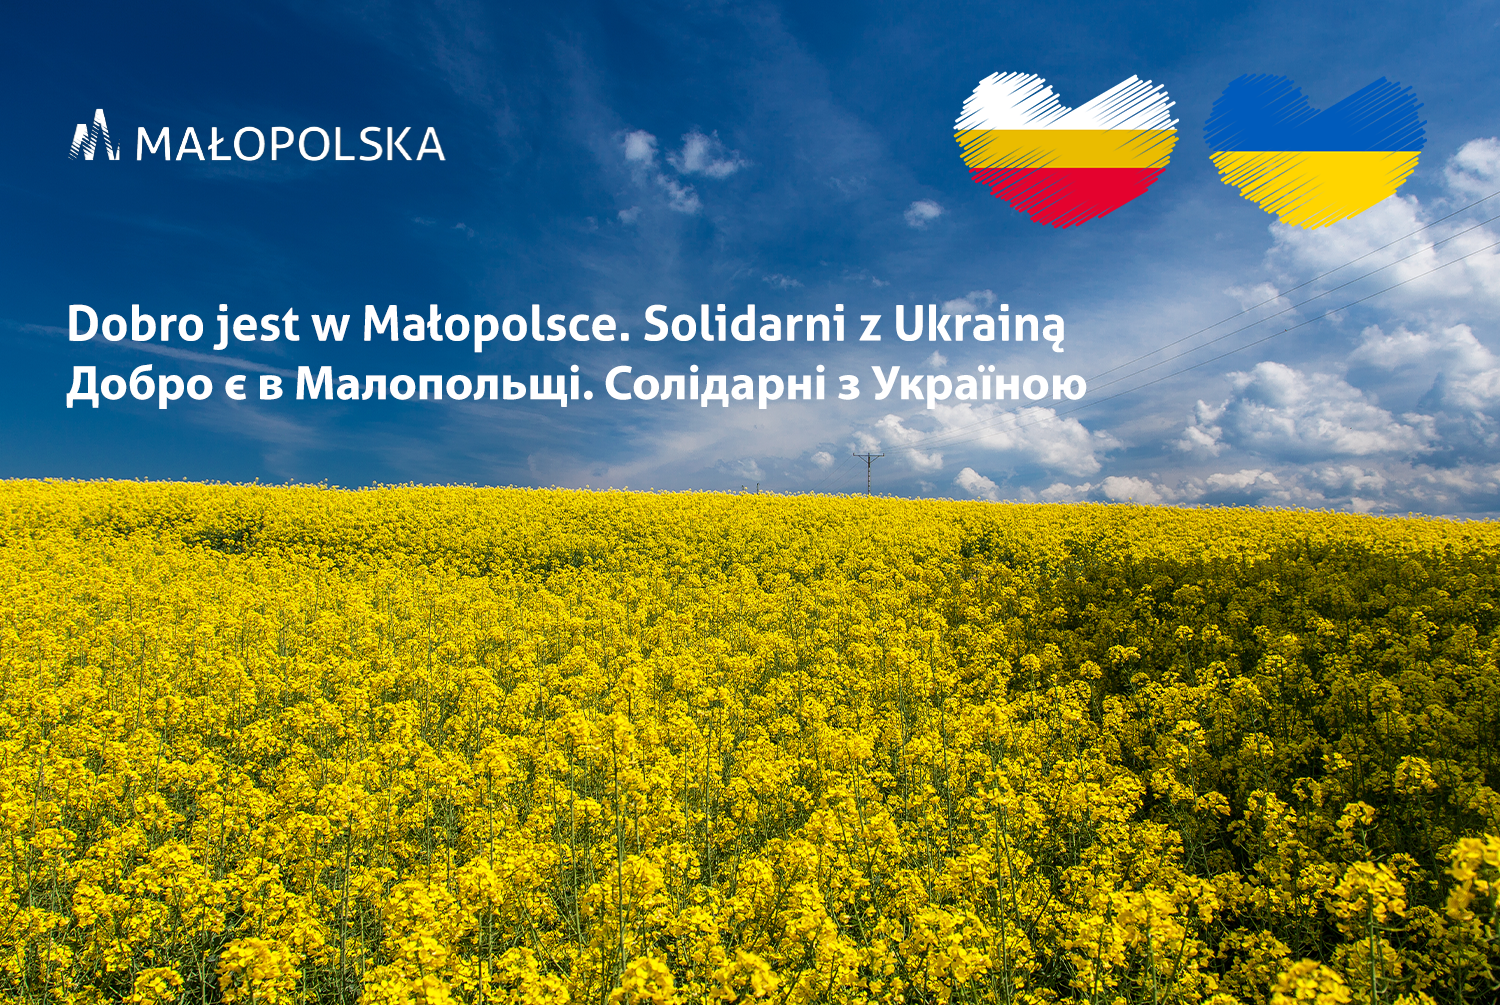 Pole rzepaku na tle niebieskiego nieba. Napis w języku polskim i ukraińskim Dobro jest w Małopolsce. Solidarni z Ukrainą